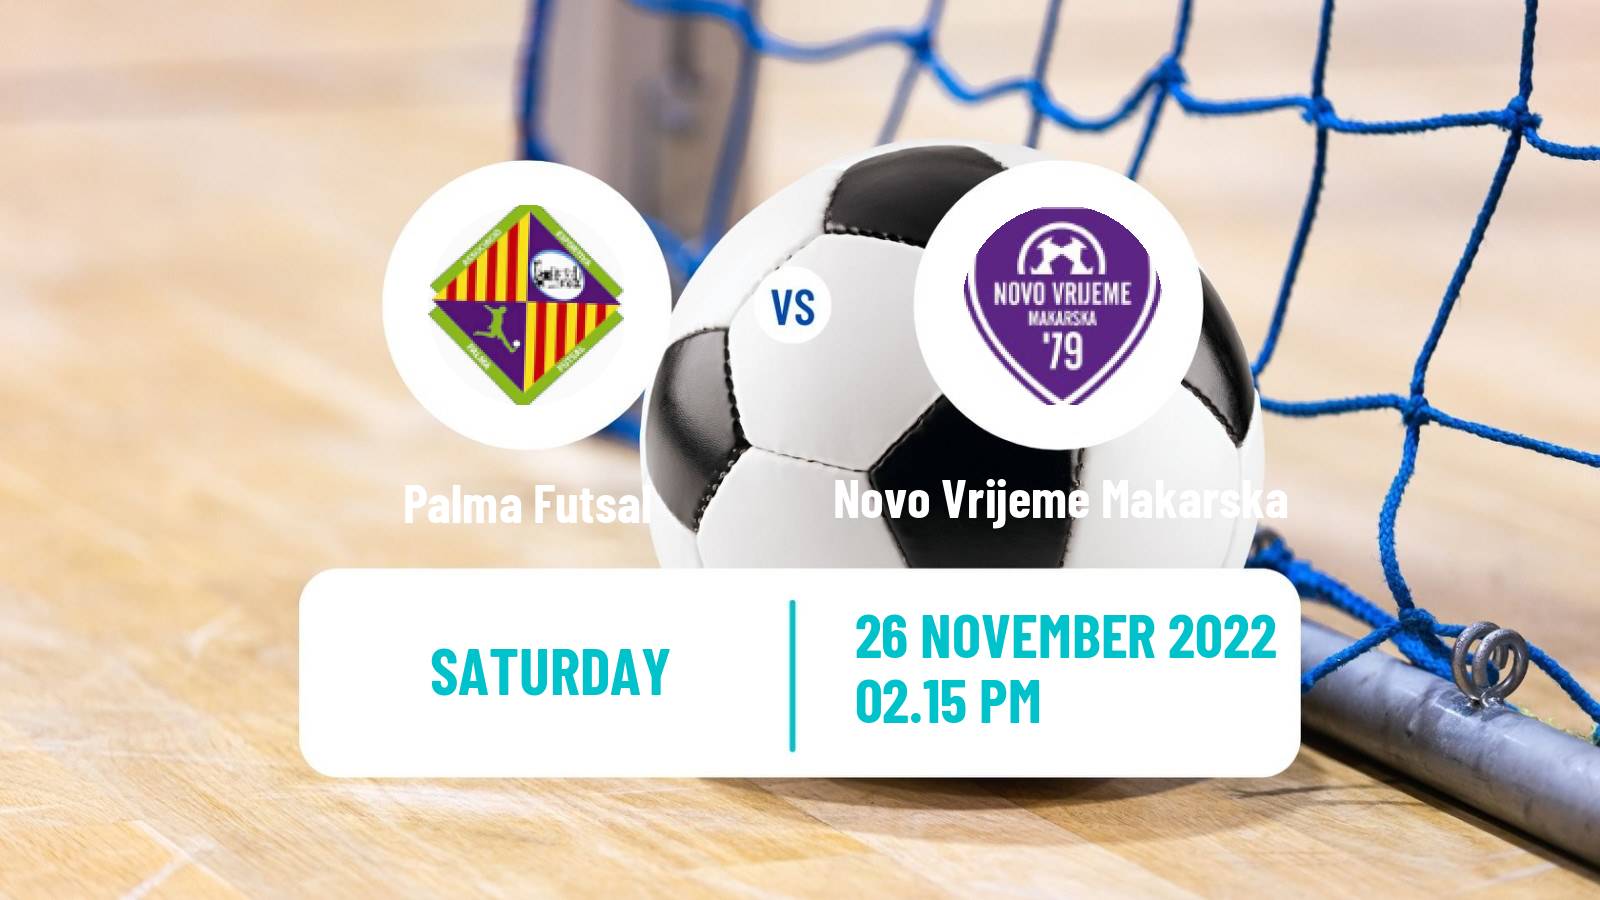 Futsal UEFA Futsal Champions League Palma Futsal - Novo Vrijeme Makarska